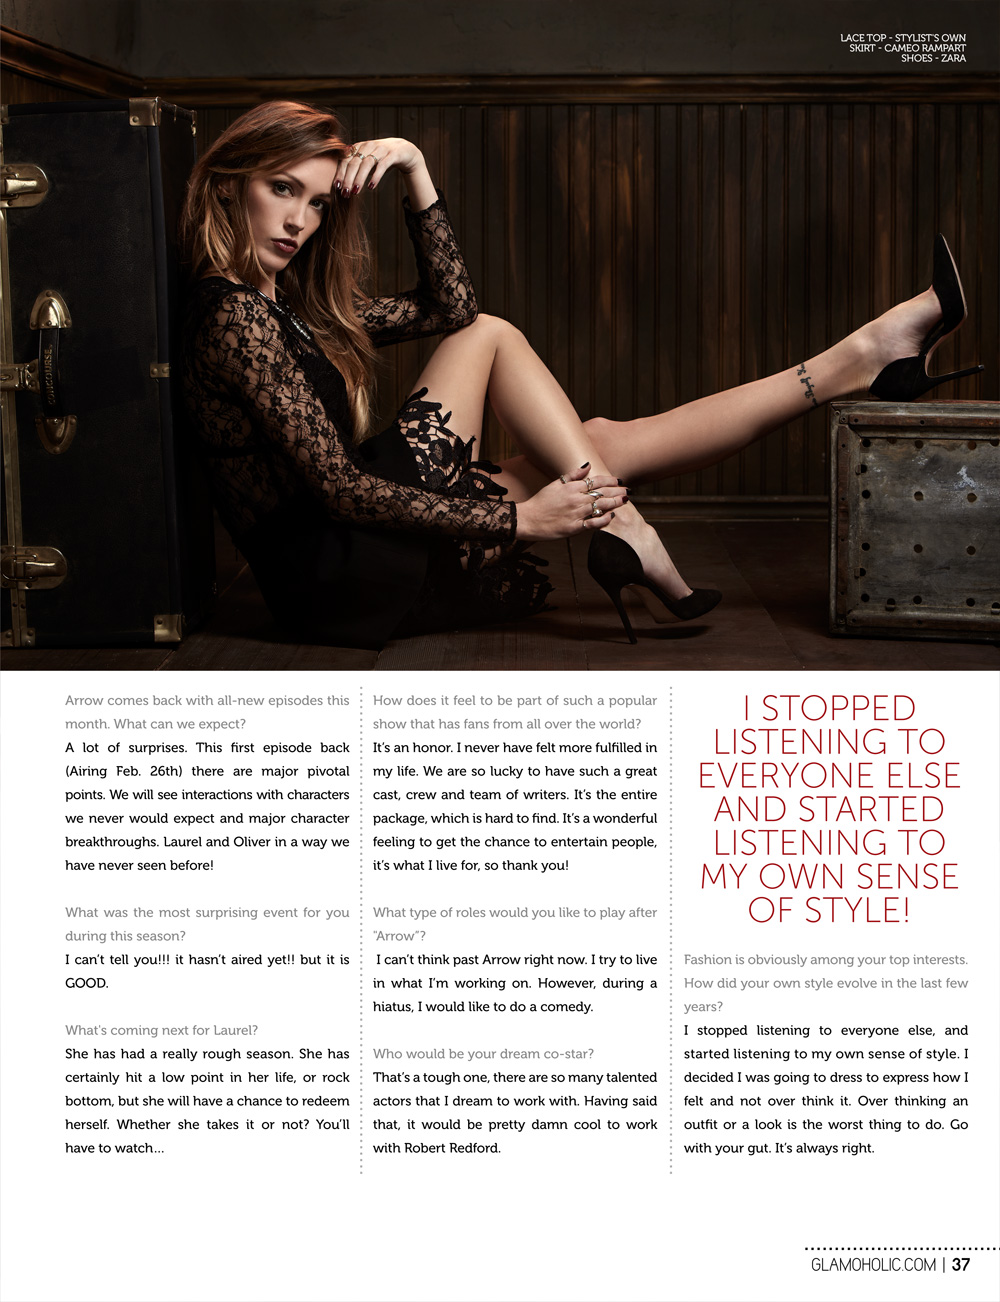 صور كايتي كاسيدي على مجلة GlamHolic أبريل 2014